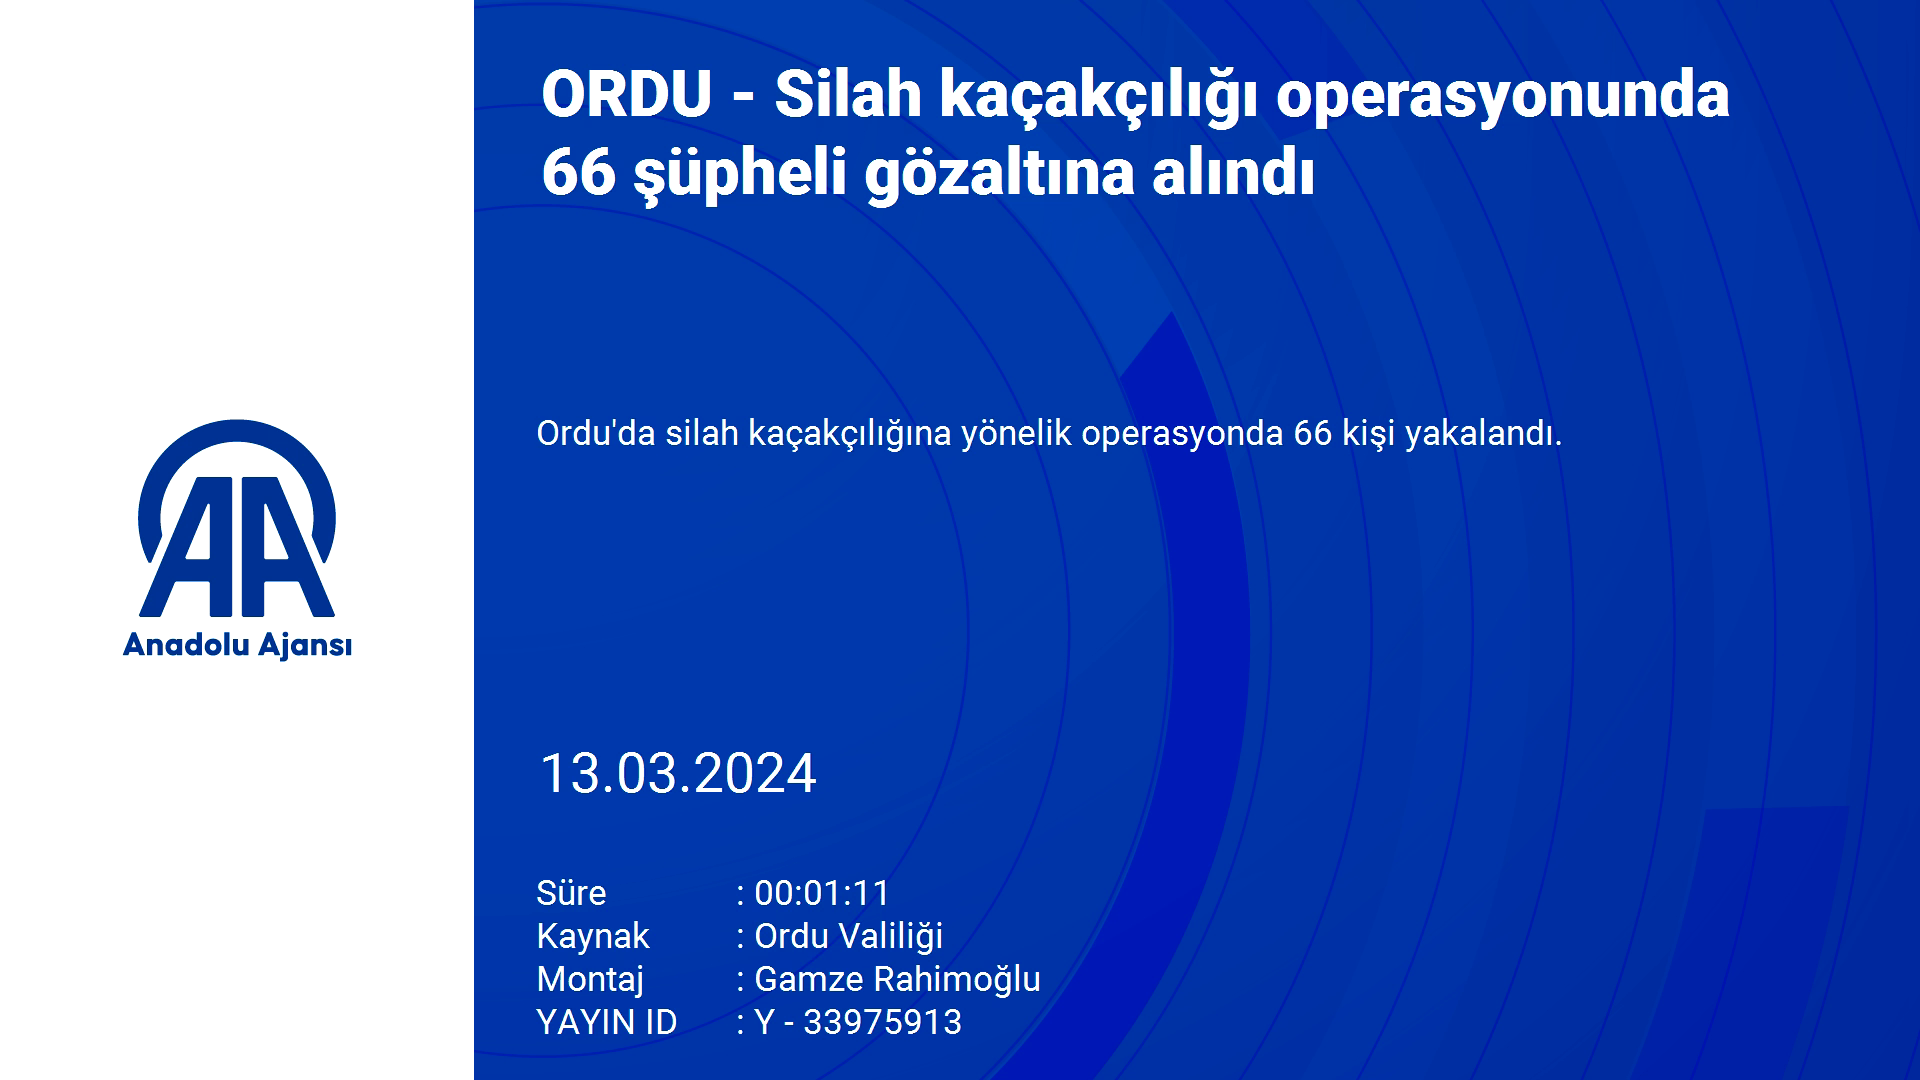 ORDU - Silah kaçakçılığı operasyonunda 66 şüpheli gözaltına alındı